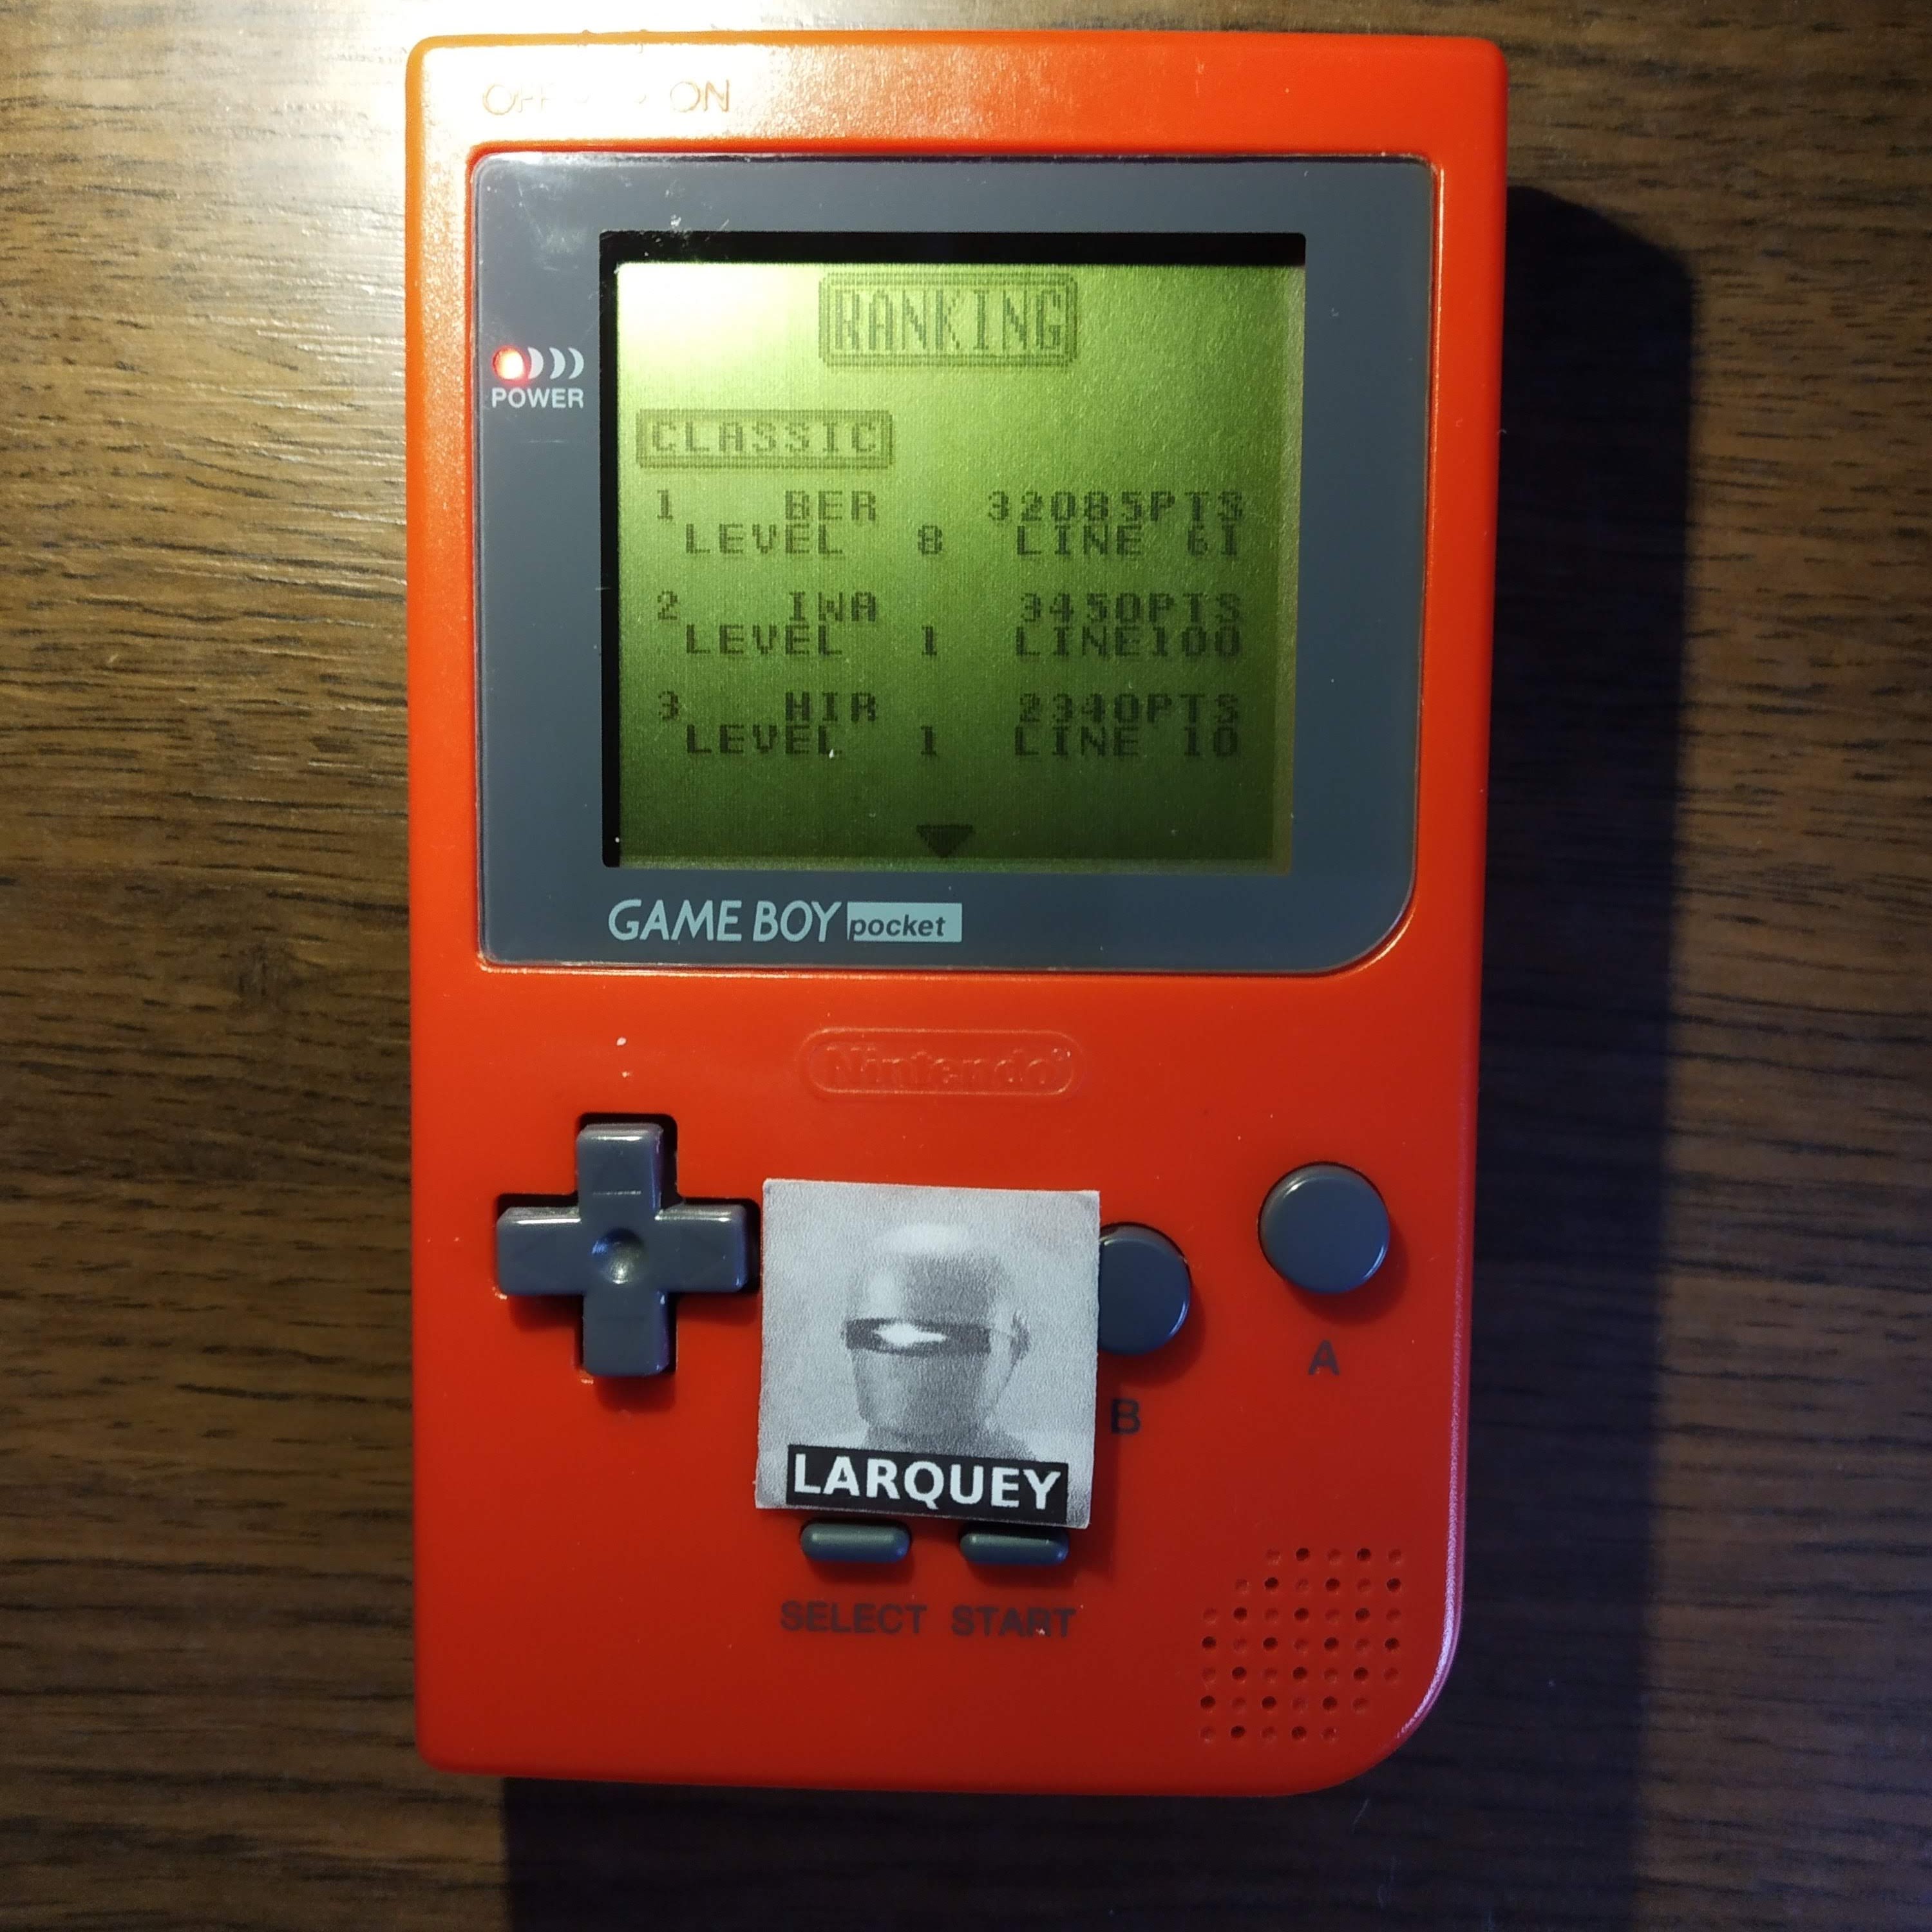 Larquey: Tetris Plus - Classic (Game Boy) 32,085 points on 2020-05-16 09:16:43